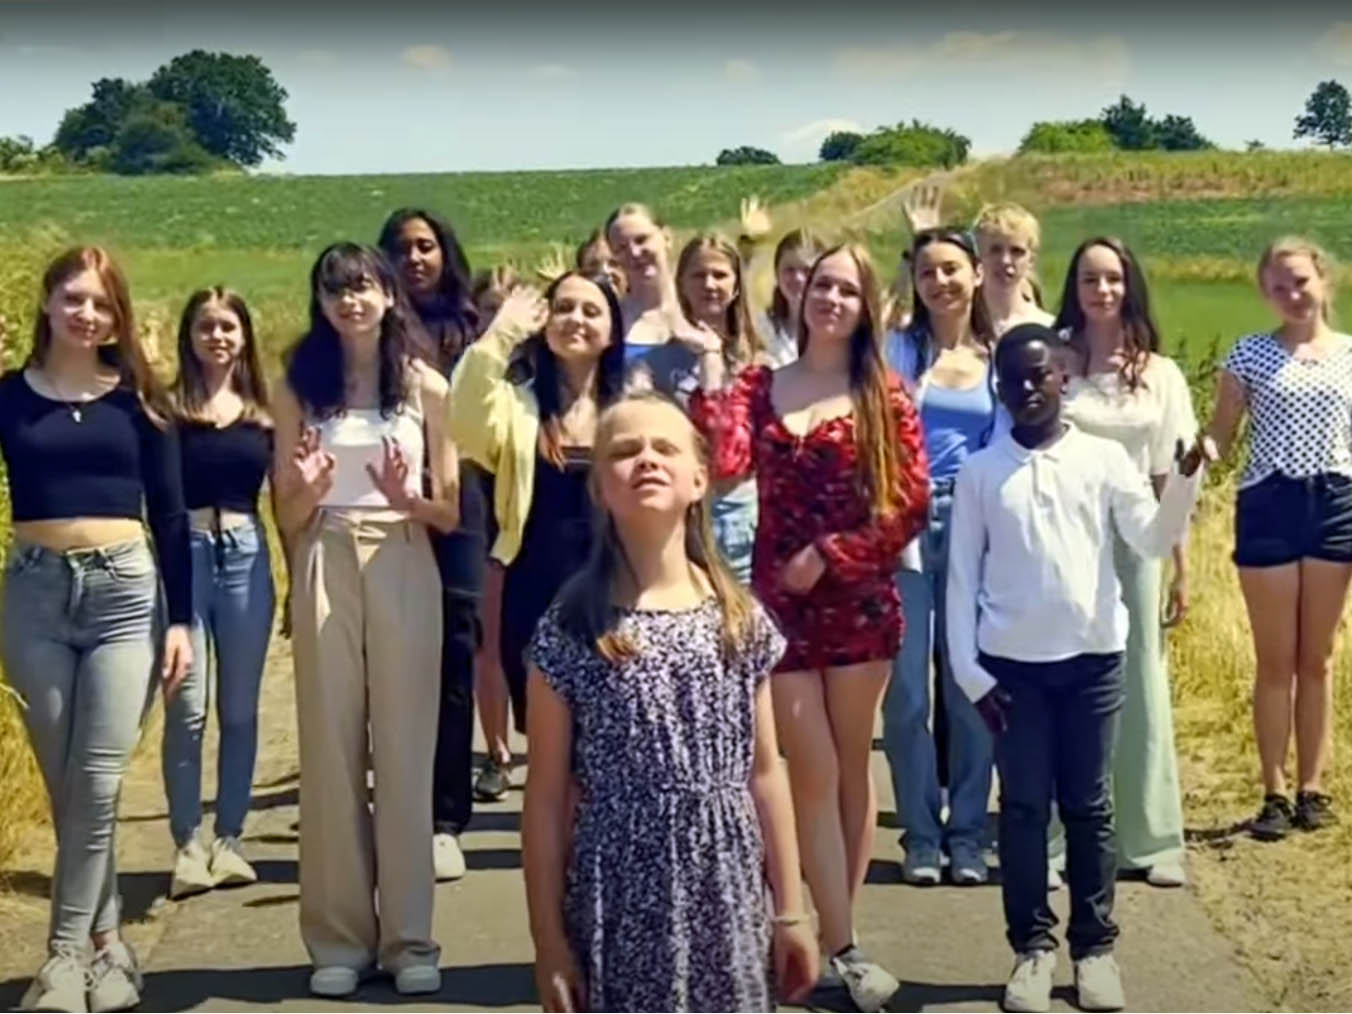 Musikvideo mit Schülerinnen und Schülern: Ein Flashmob im Feld